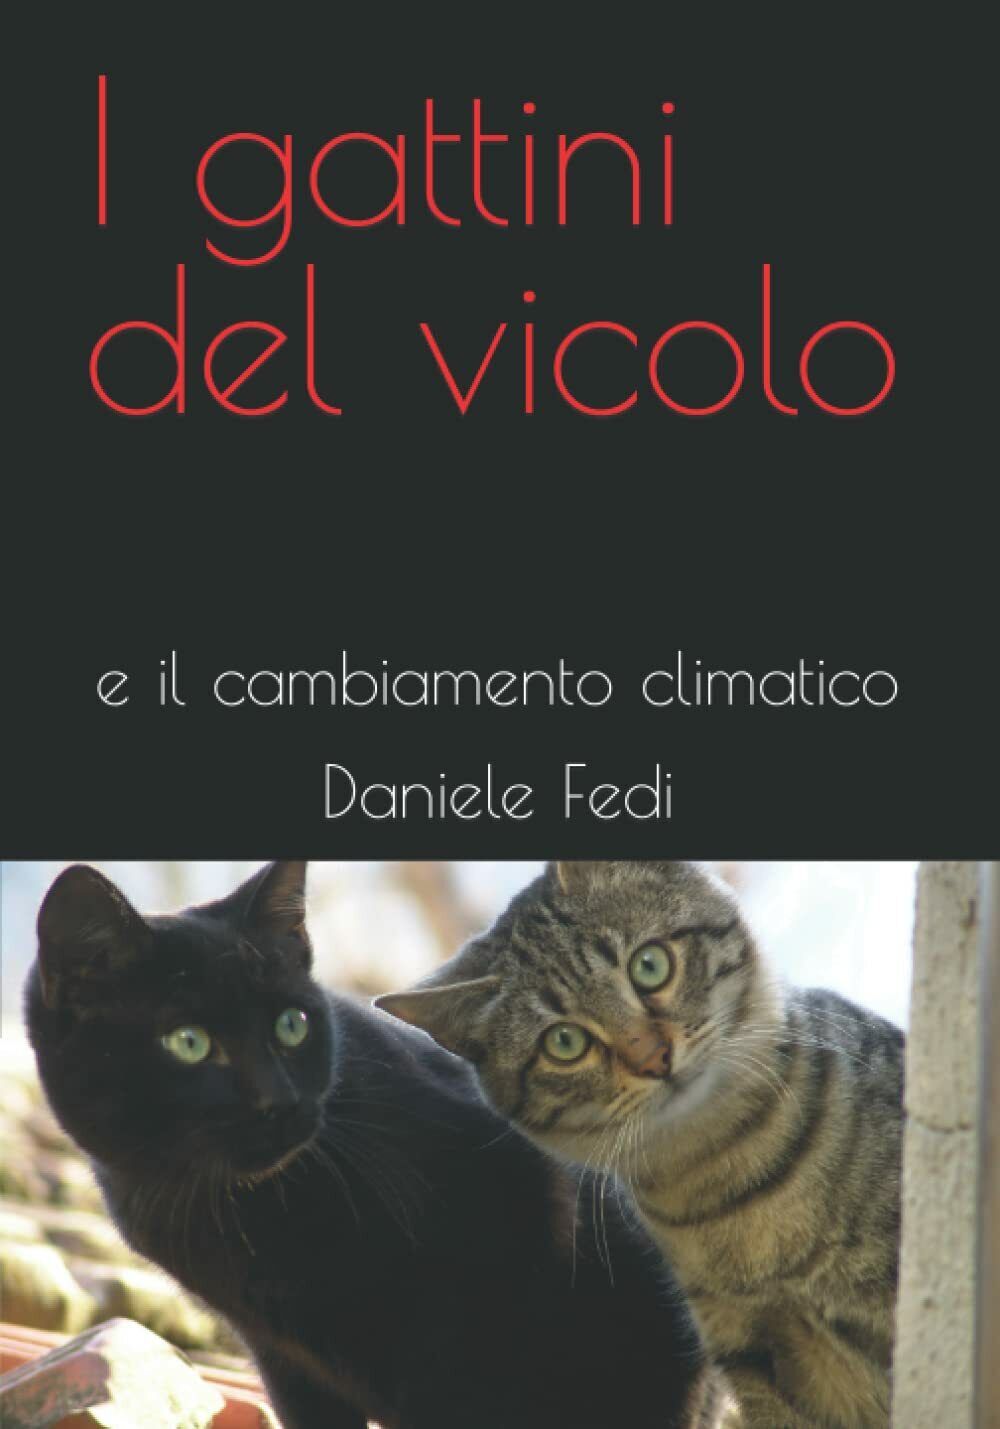 I gattini del vicolo: e il cambiamento climatico di Daniele Fedi,  2021,  Indipe